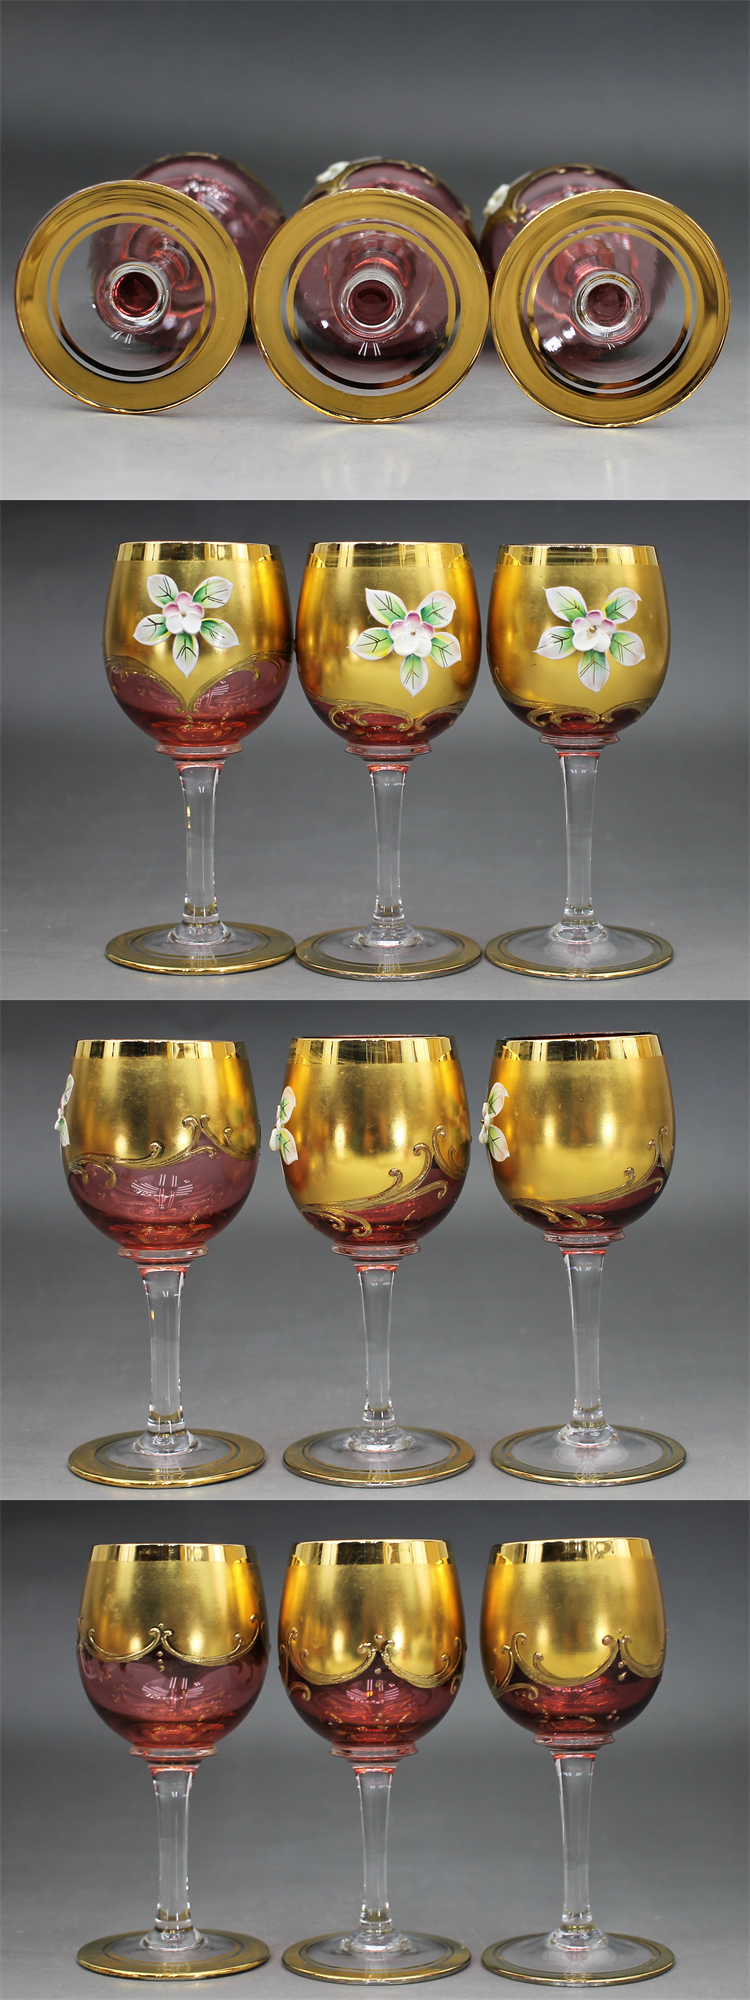 C444 ムラーノグラス ワイングラス 6客 高さ13㎝ ムラーノガラス ムラノグラス ヴェネチアンガラス イタリア ベネチアグラス MURANO GLASS